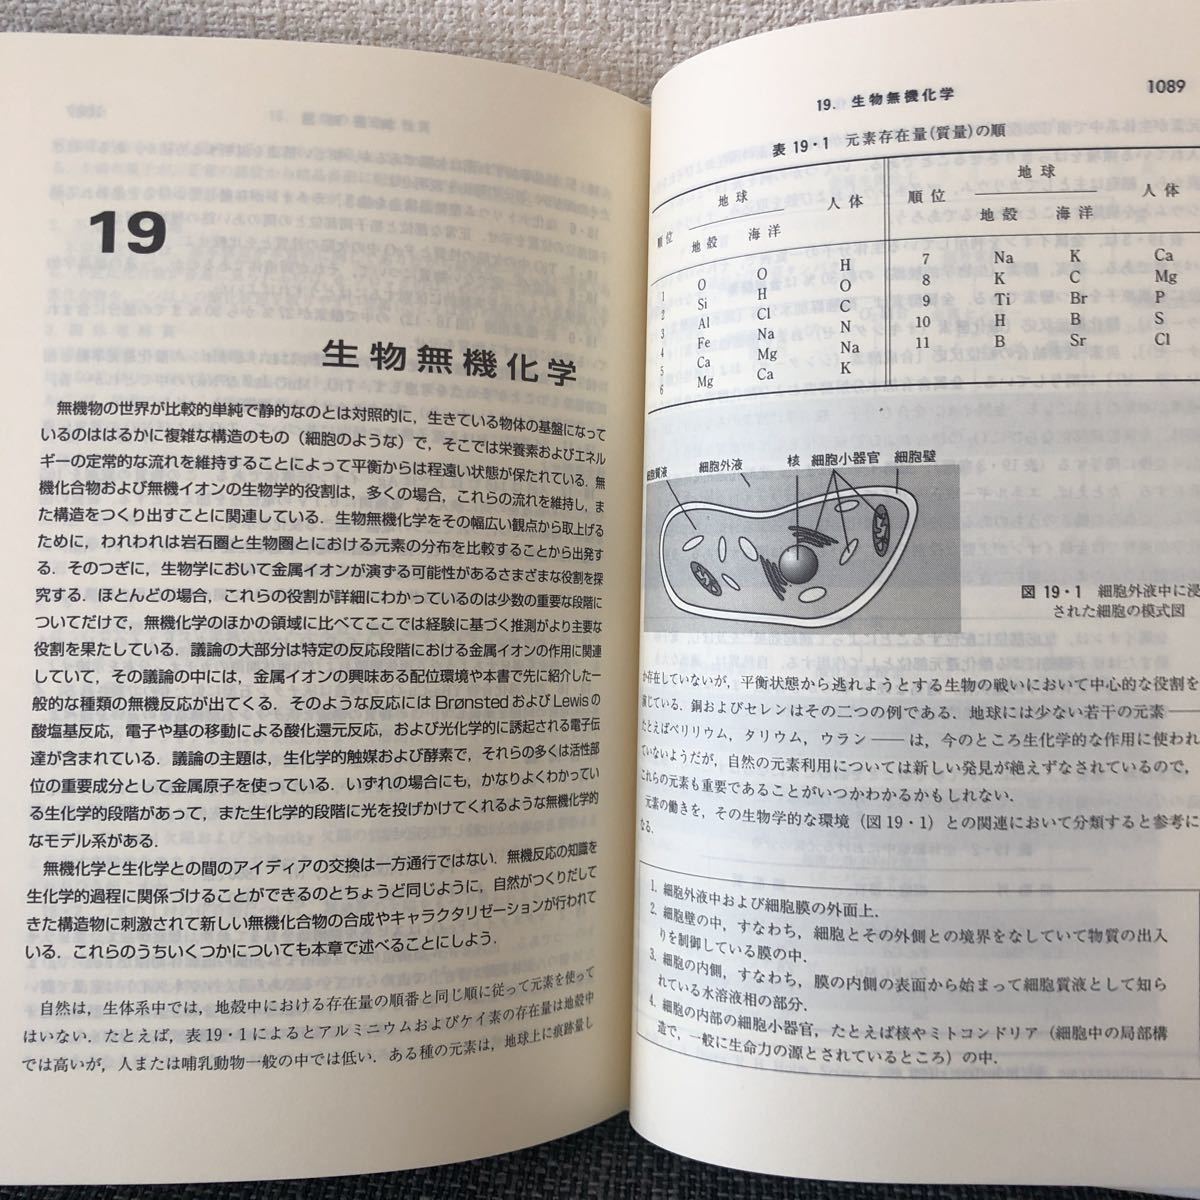  специализация документ shulai балка нет машина химия ( сверху / внизу ) Tokyo химия такой же человек 1996 год редкий товар 